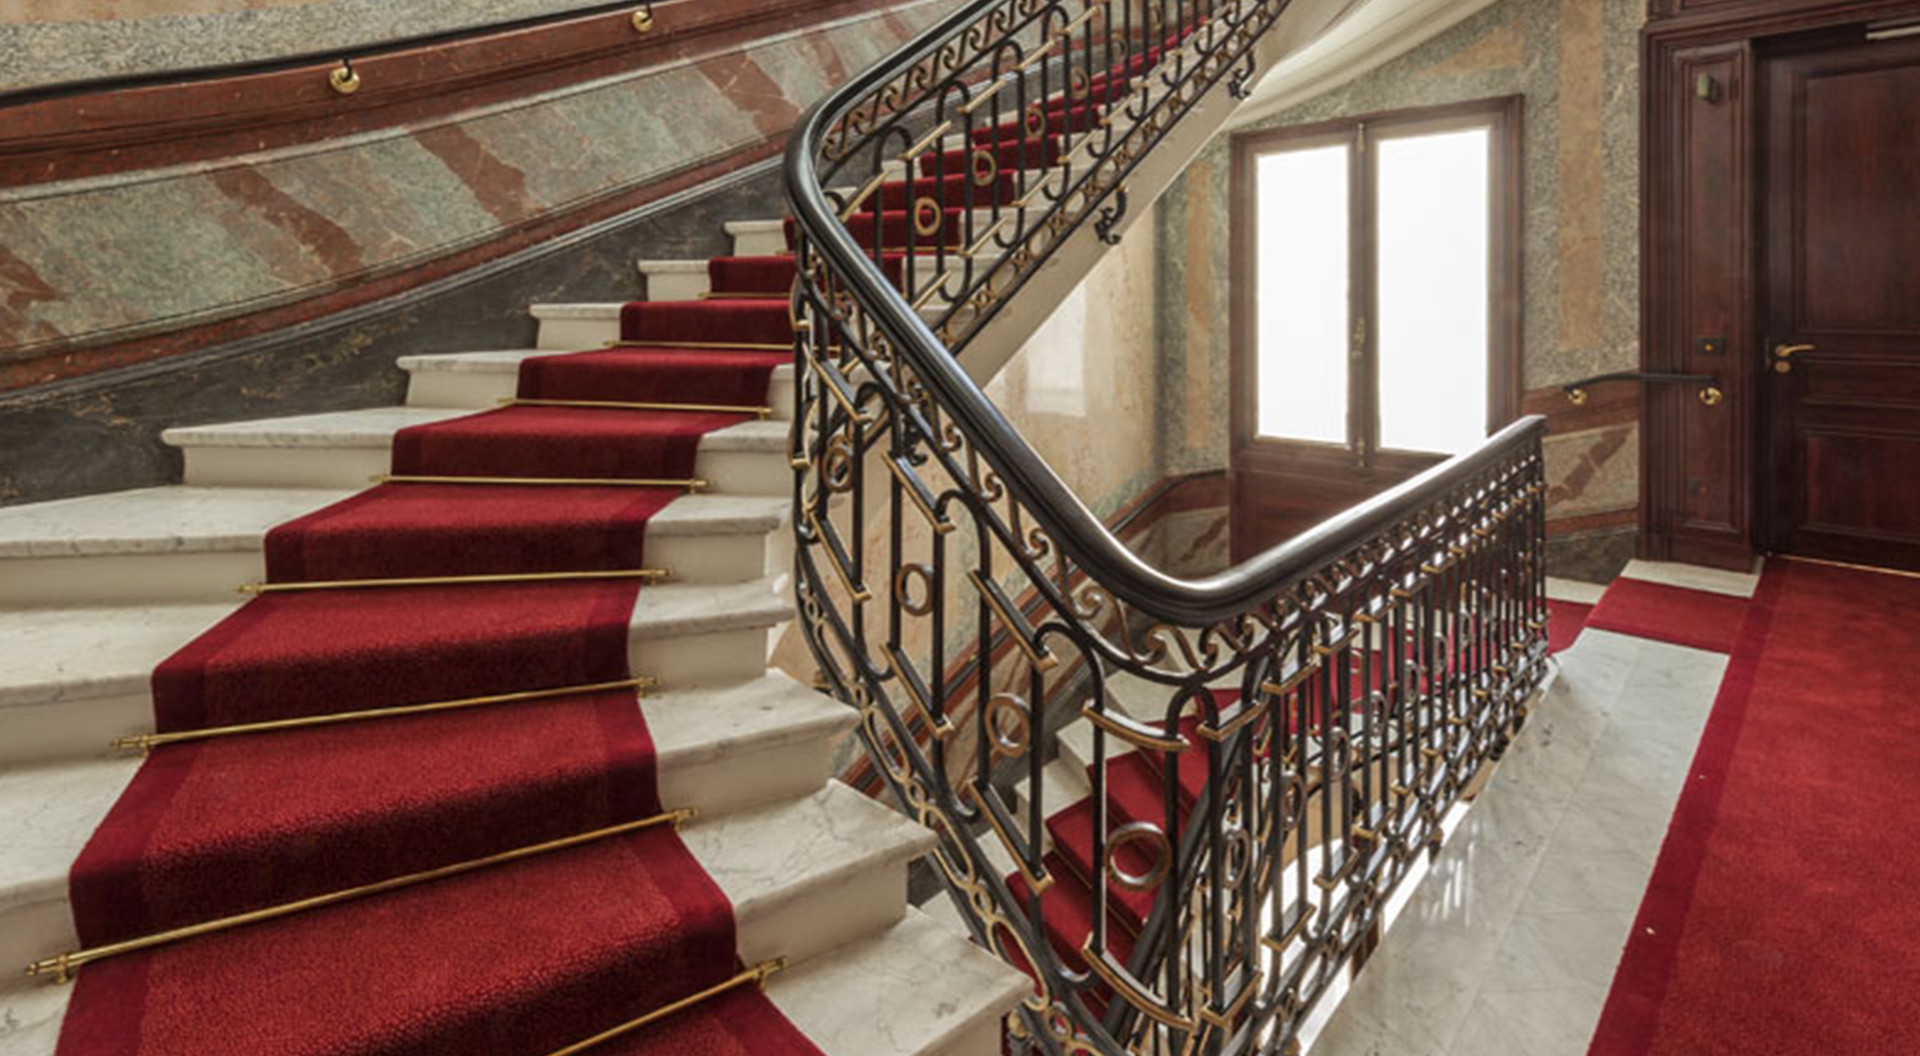 St Germain escalier